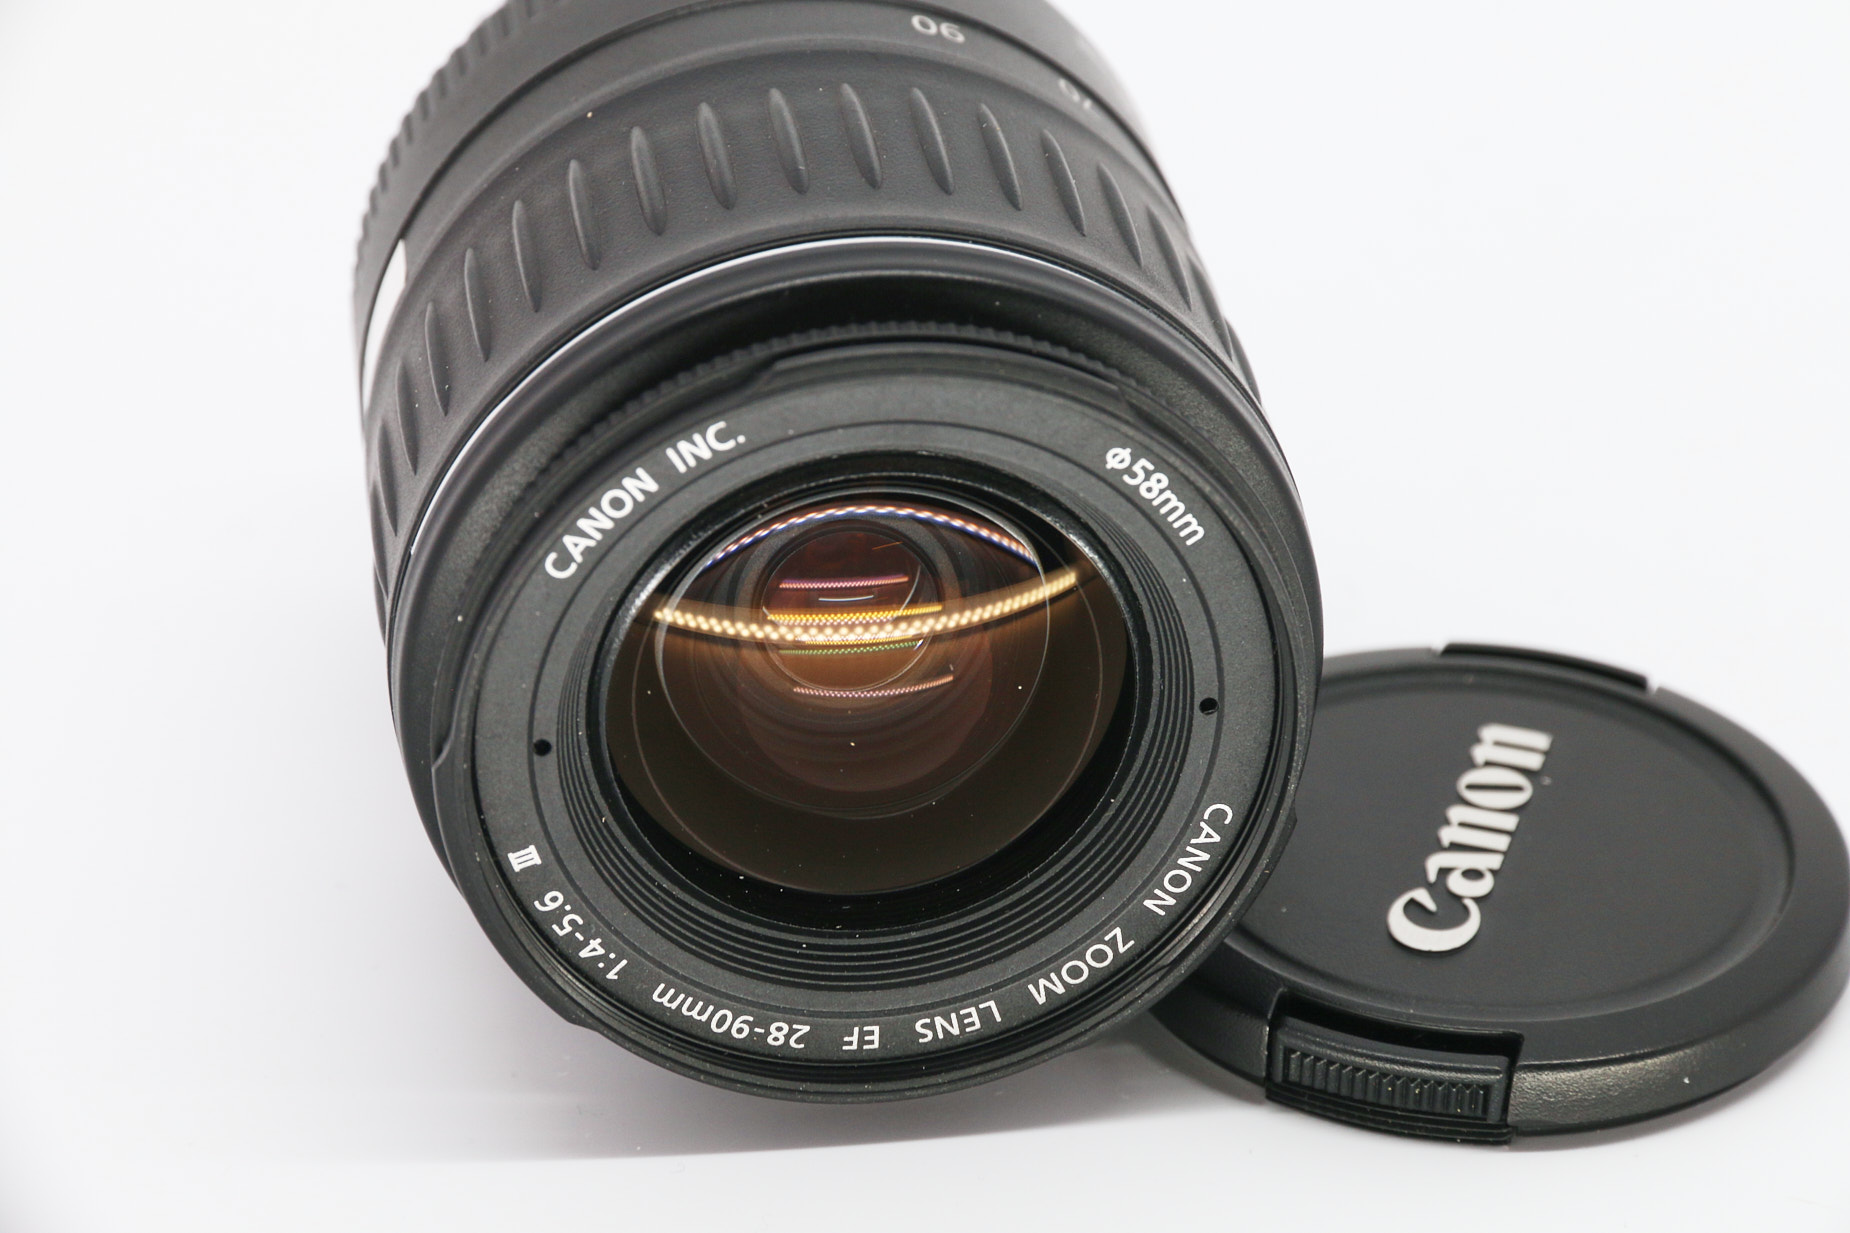 Canon EF 28-90mm gebraucht Bild 04